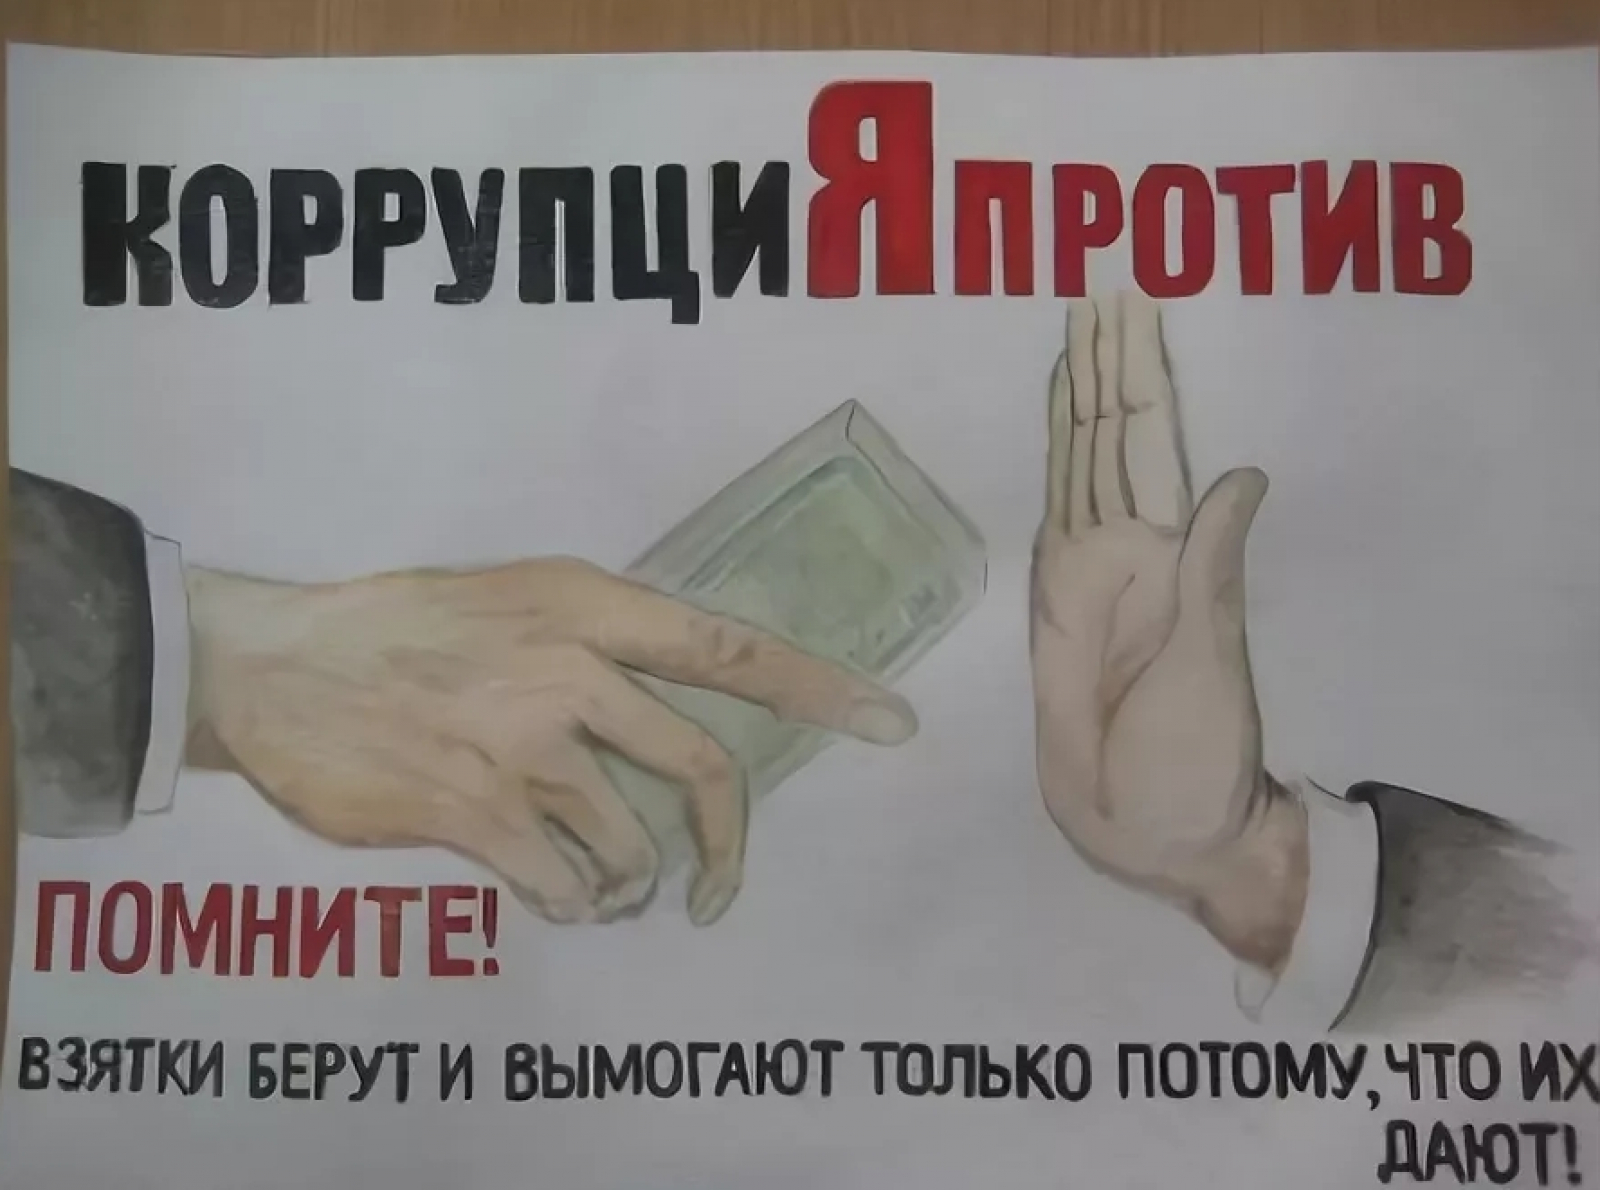 Плакат МФЦ против коррупции